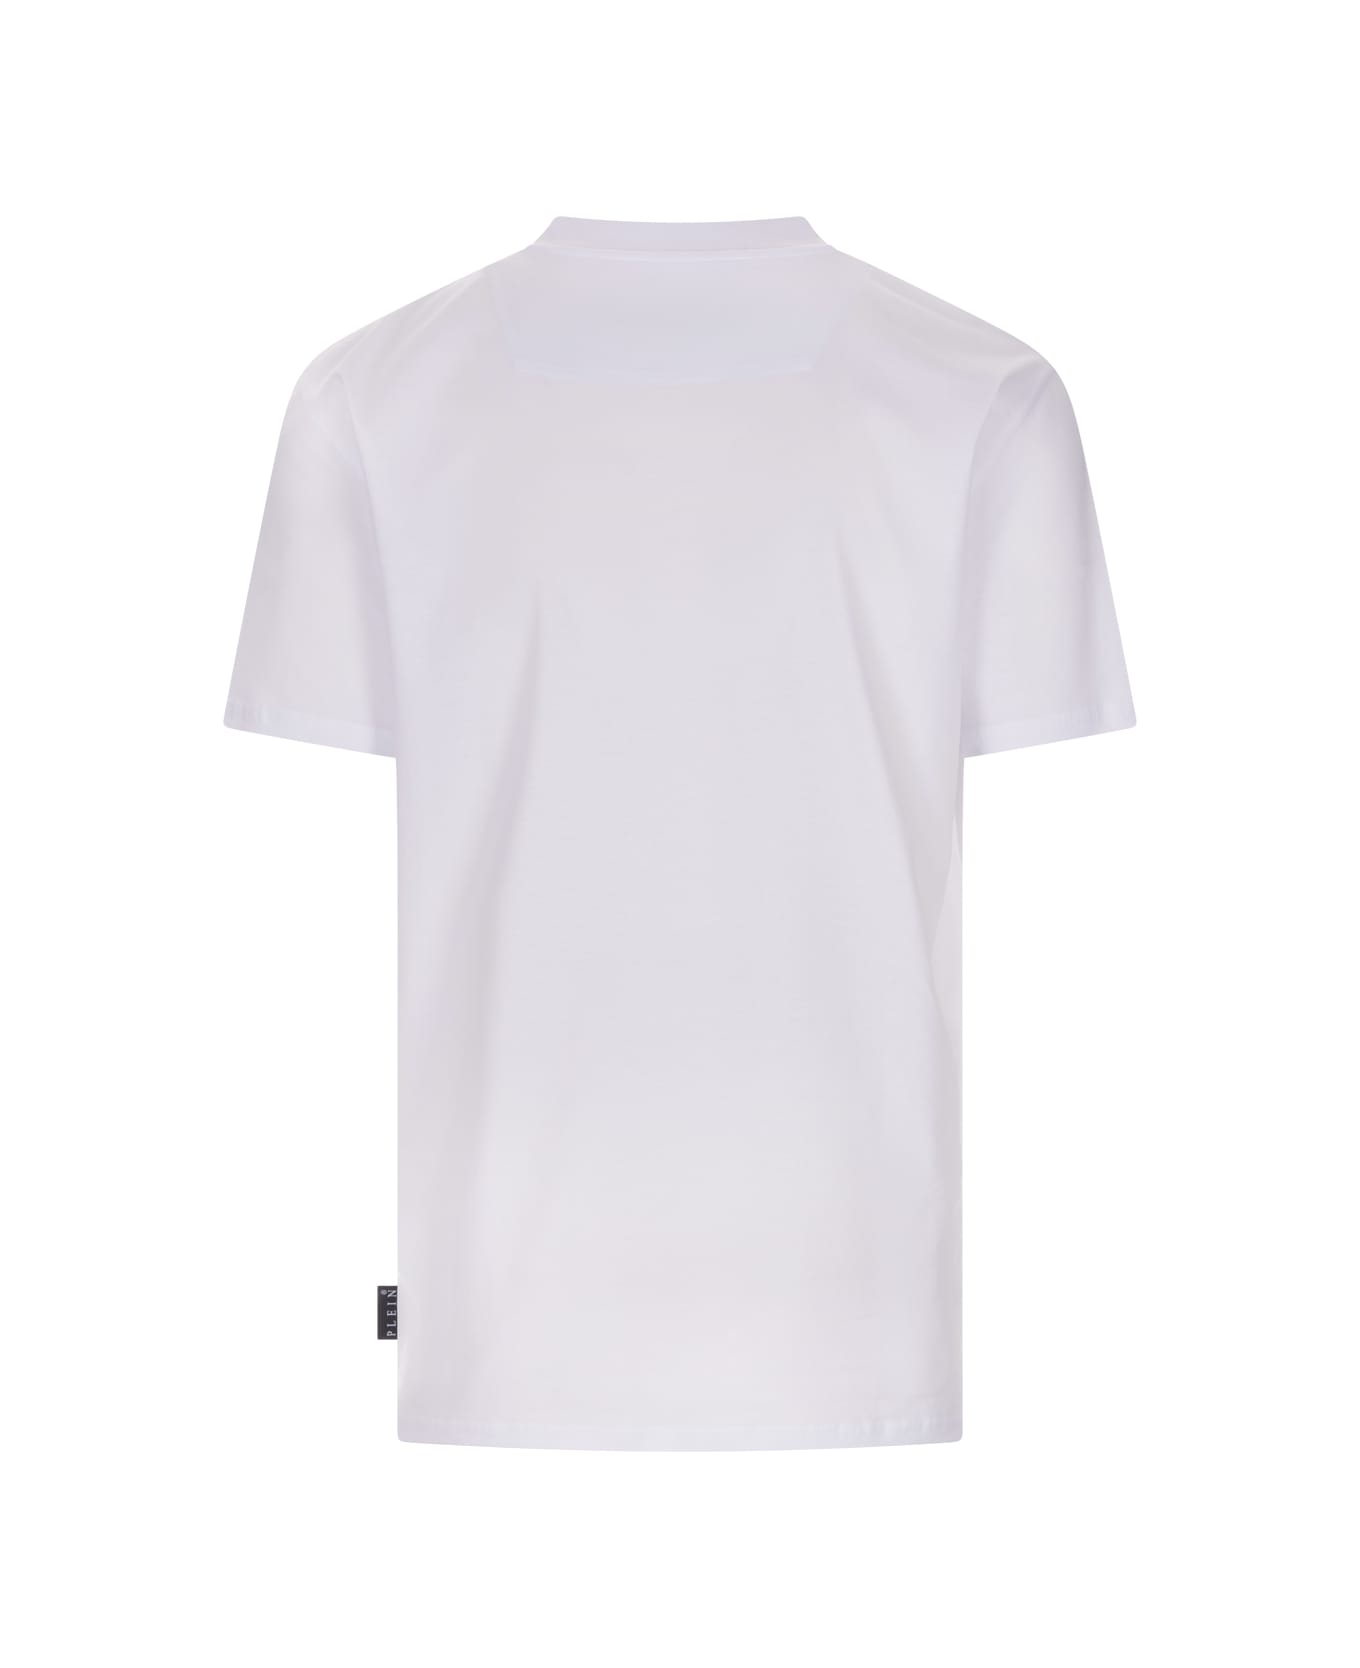 Philipp Plein White Hexagon T-shirt - White シャツ